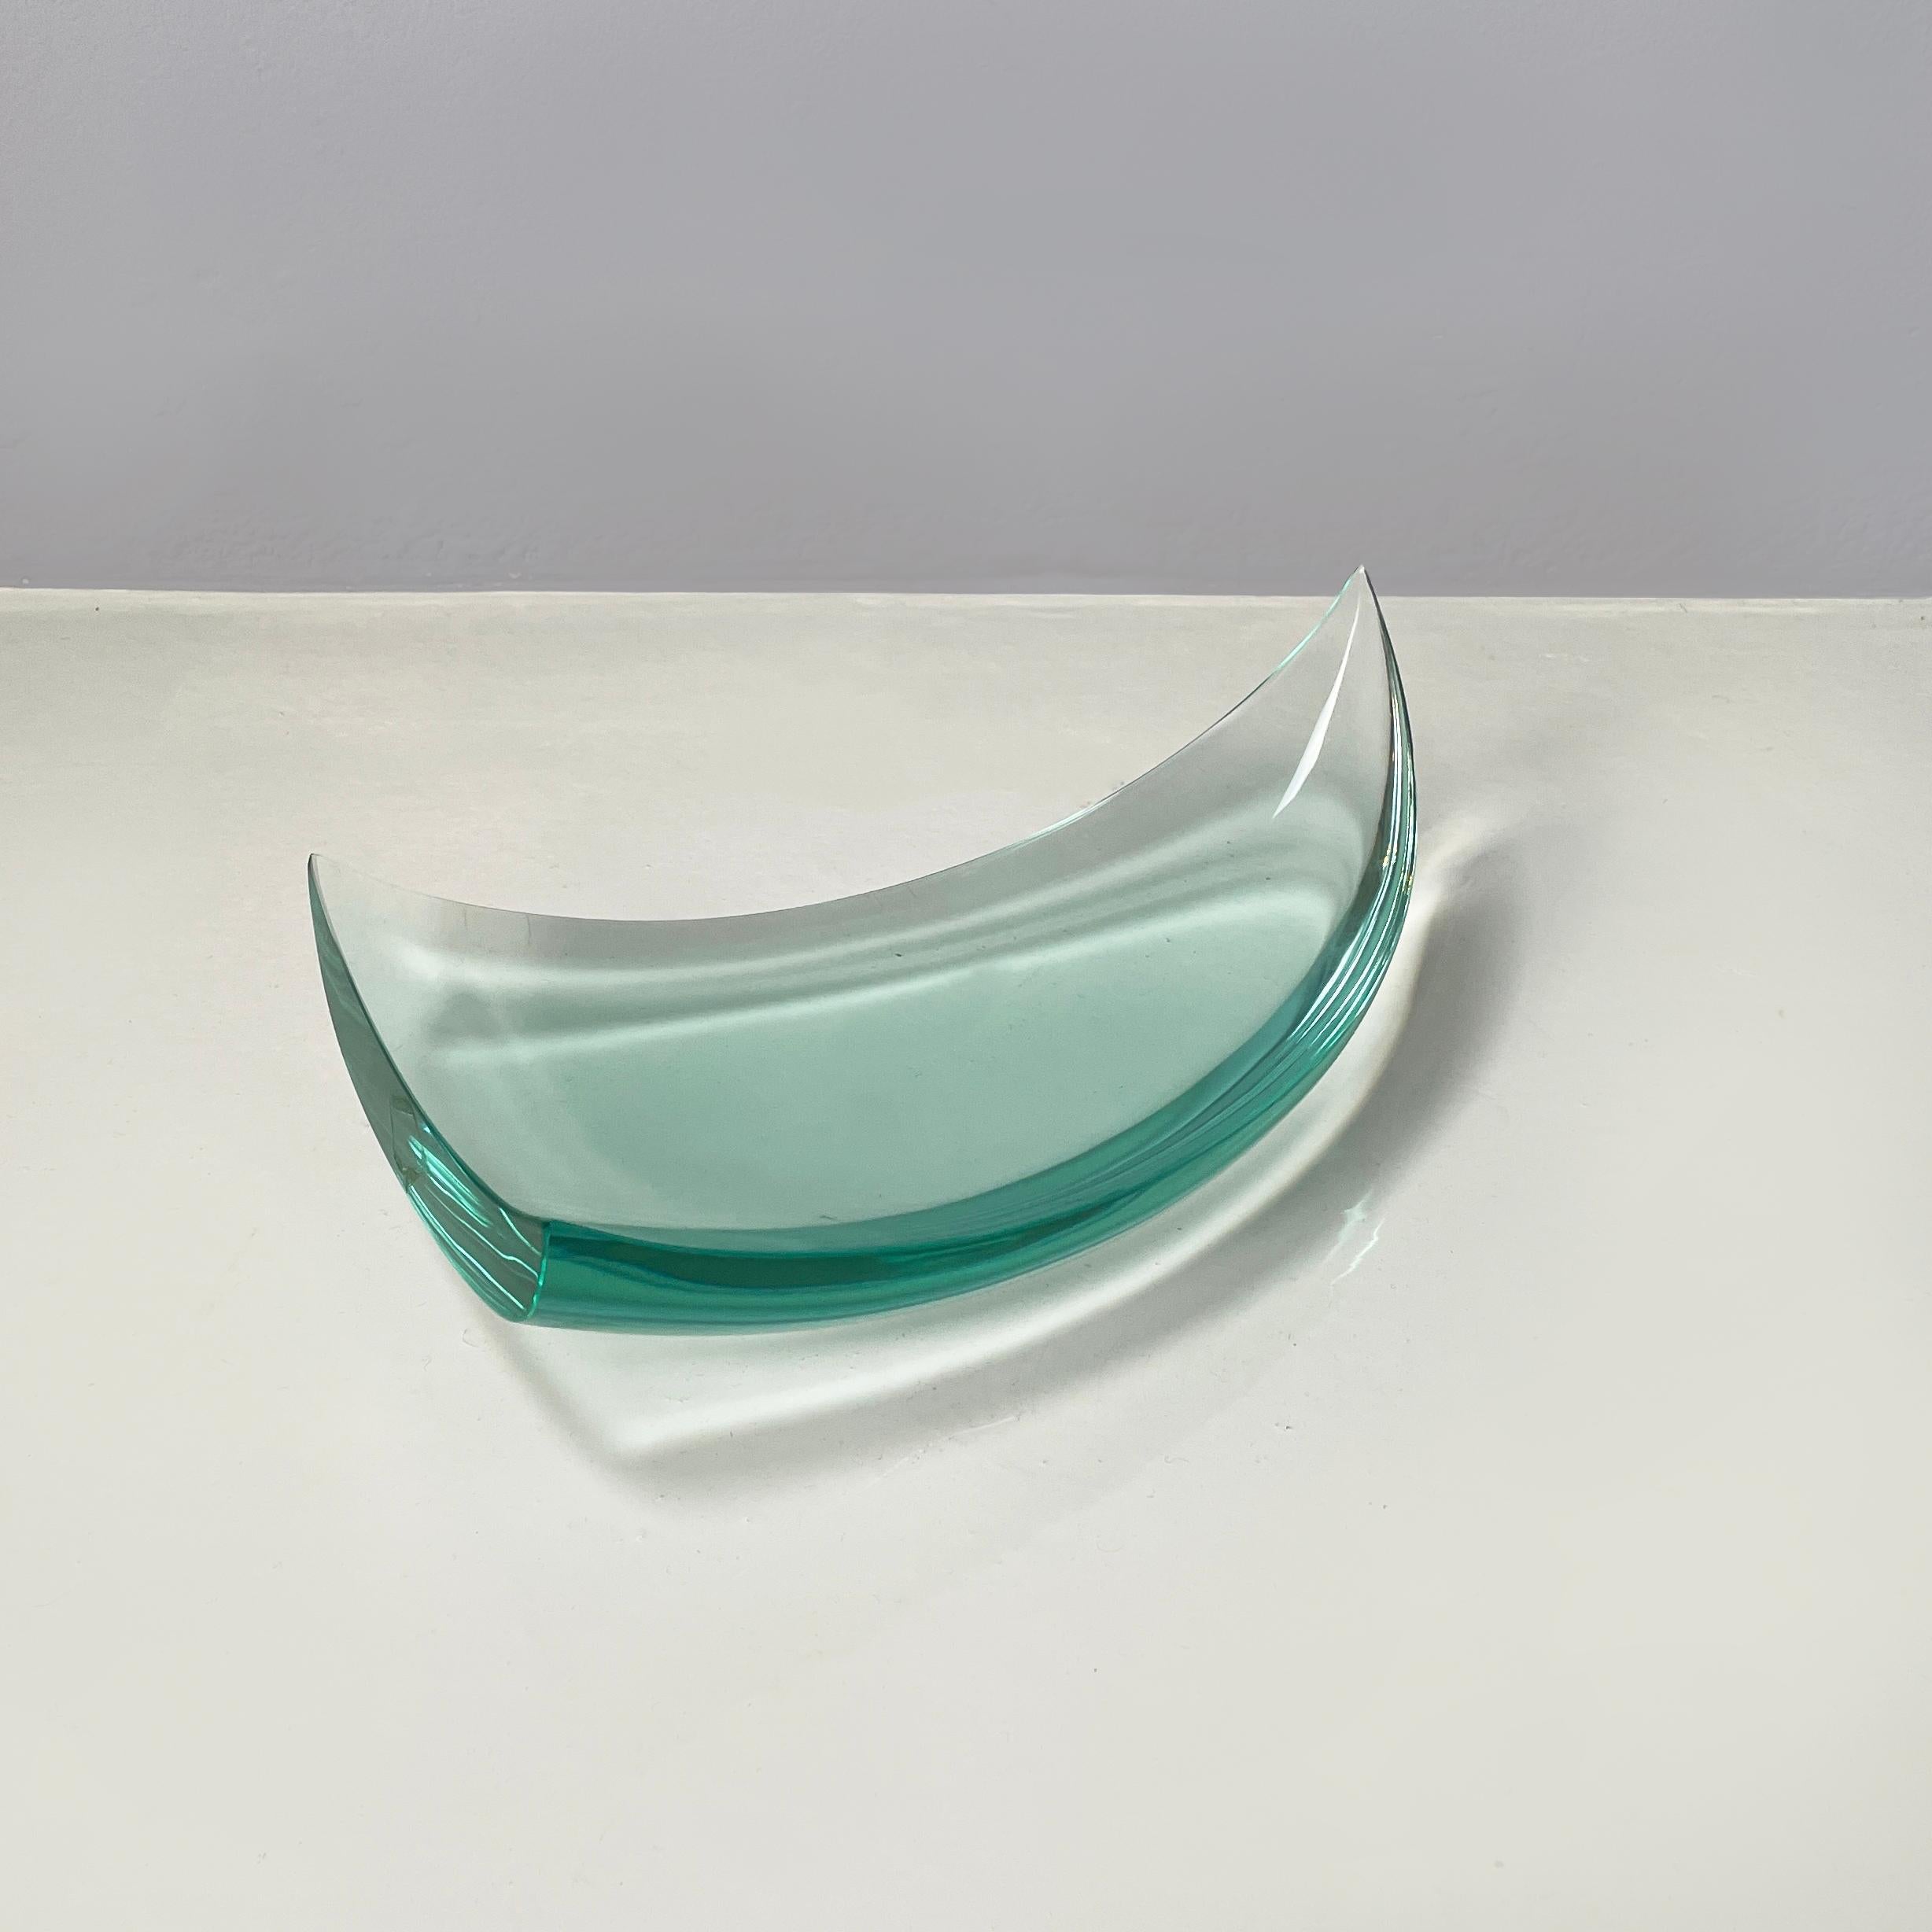 Porte-objets ou centre de table italien du milieu du siècle dernier en forme de voile par Fontana Arte, années 1960
Porte-objet en forme de voile entièrement réalisé en verre épais de couleur vert d'eau. Les pointes du triangle sont surélevées,